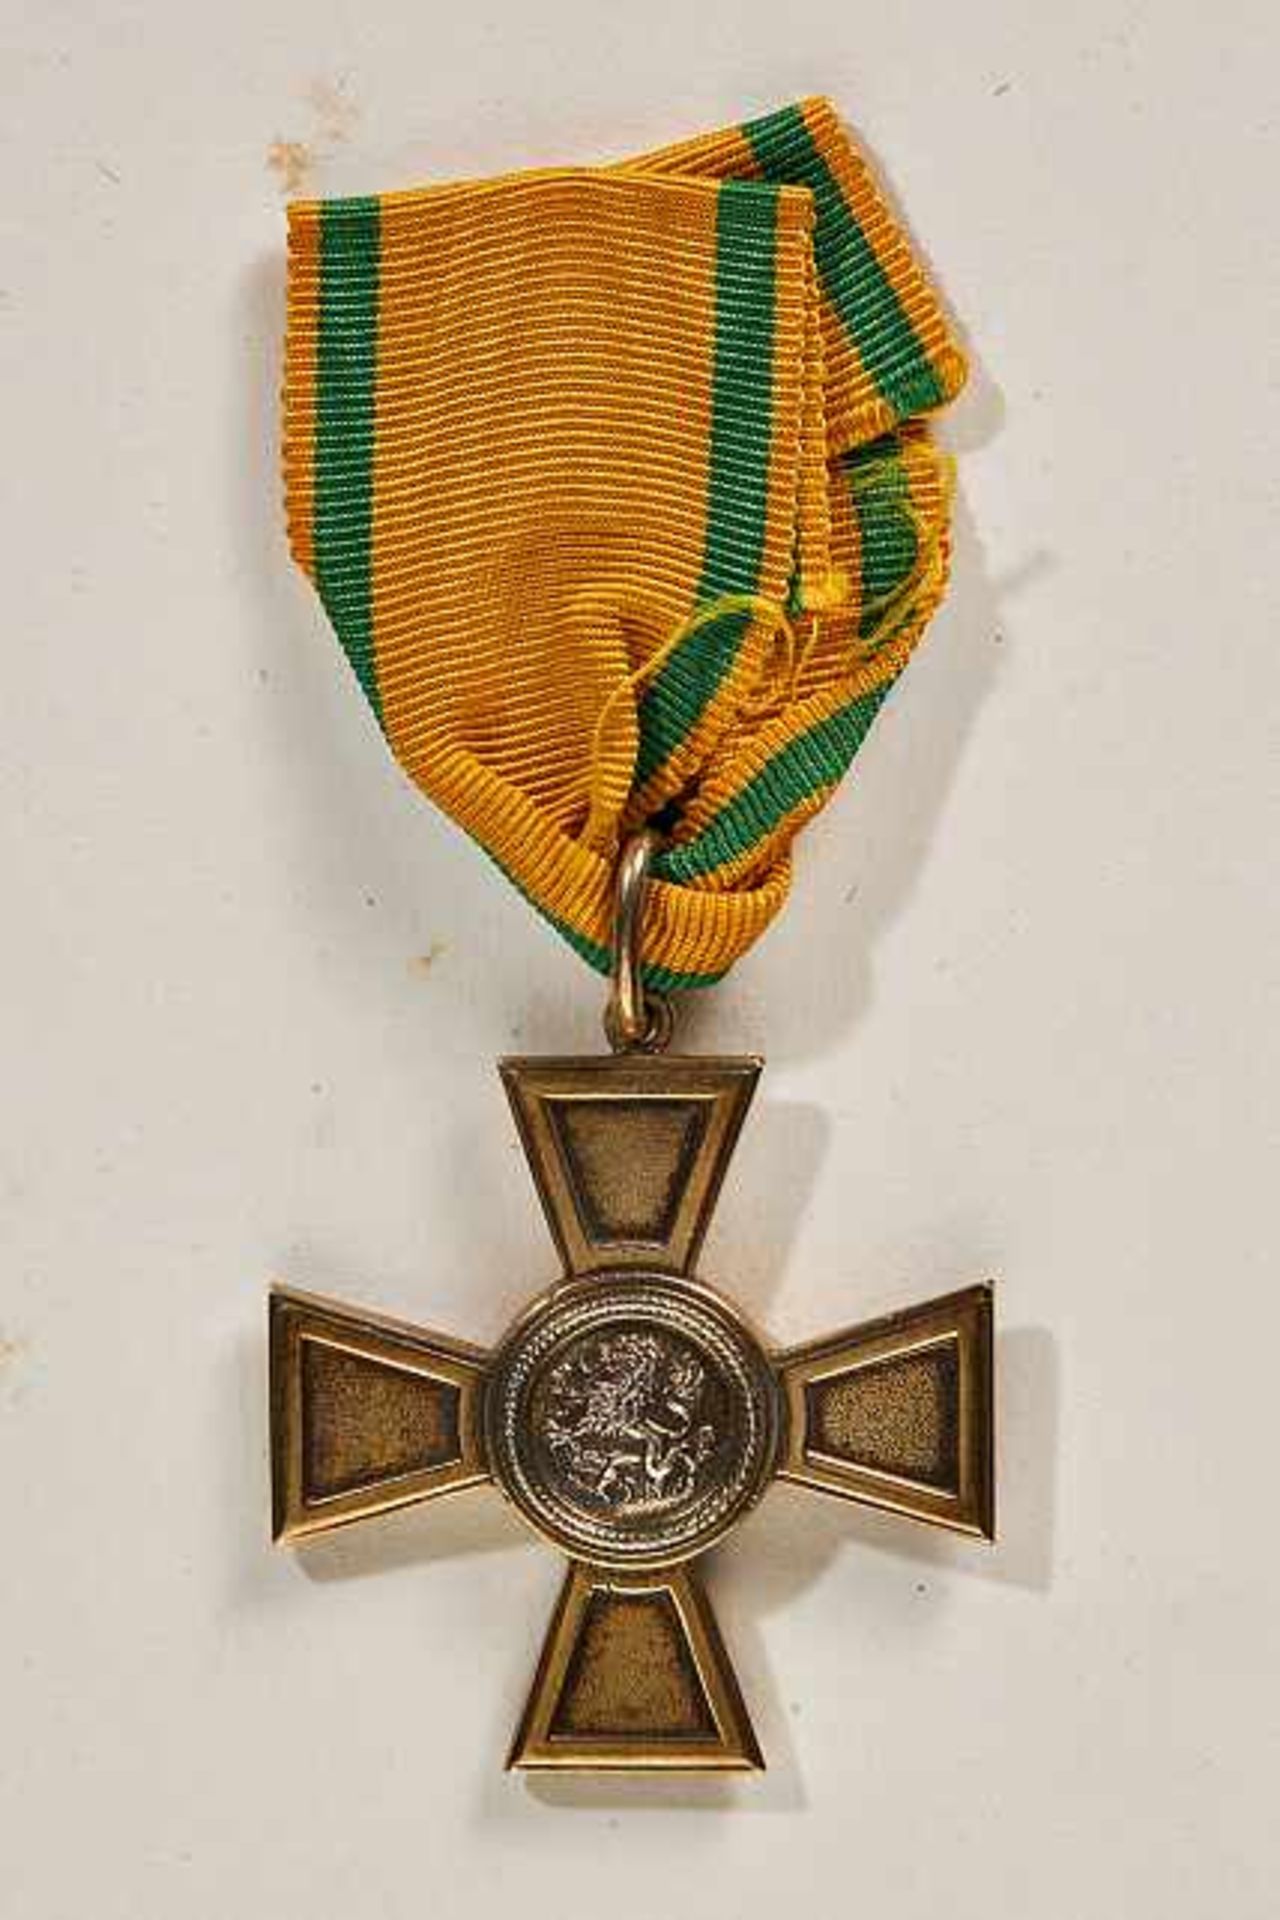 Orden & Ehrenzeichen Deutschland - Baden : Baden Order of the Zähringer Lion Merit Cross.Silver Gilt